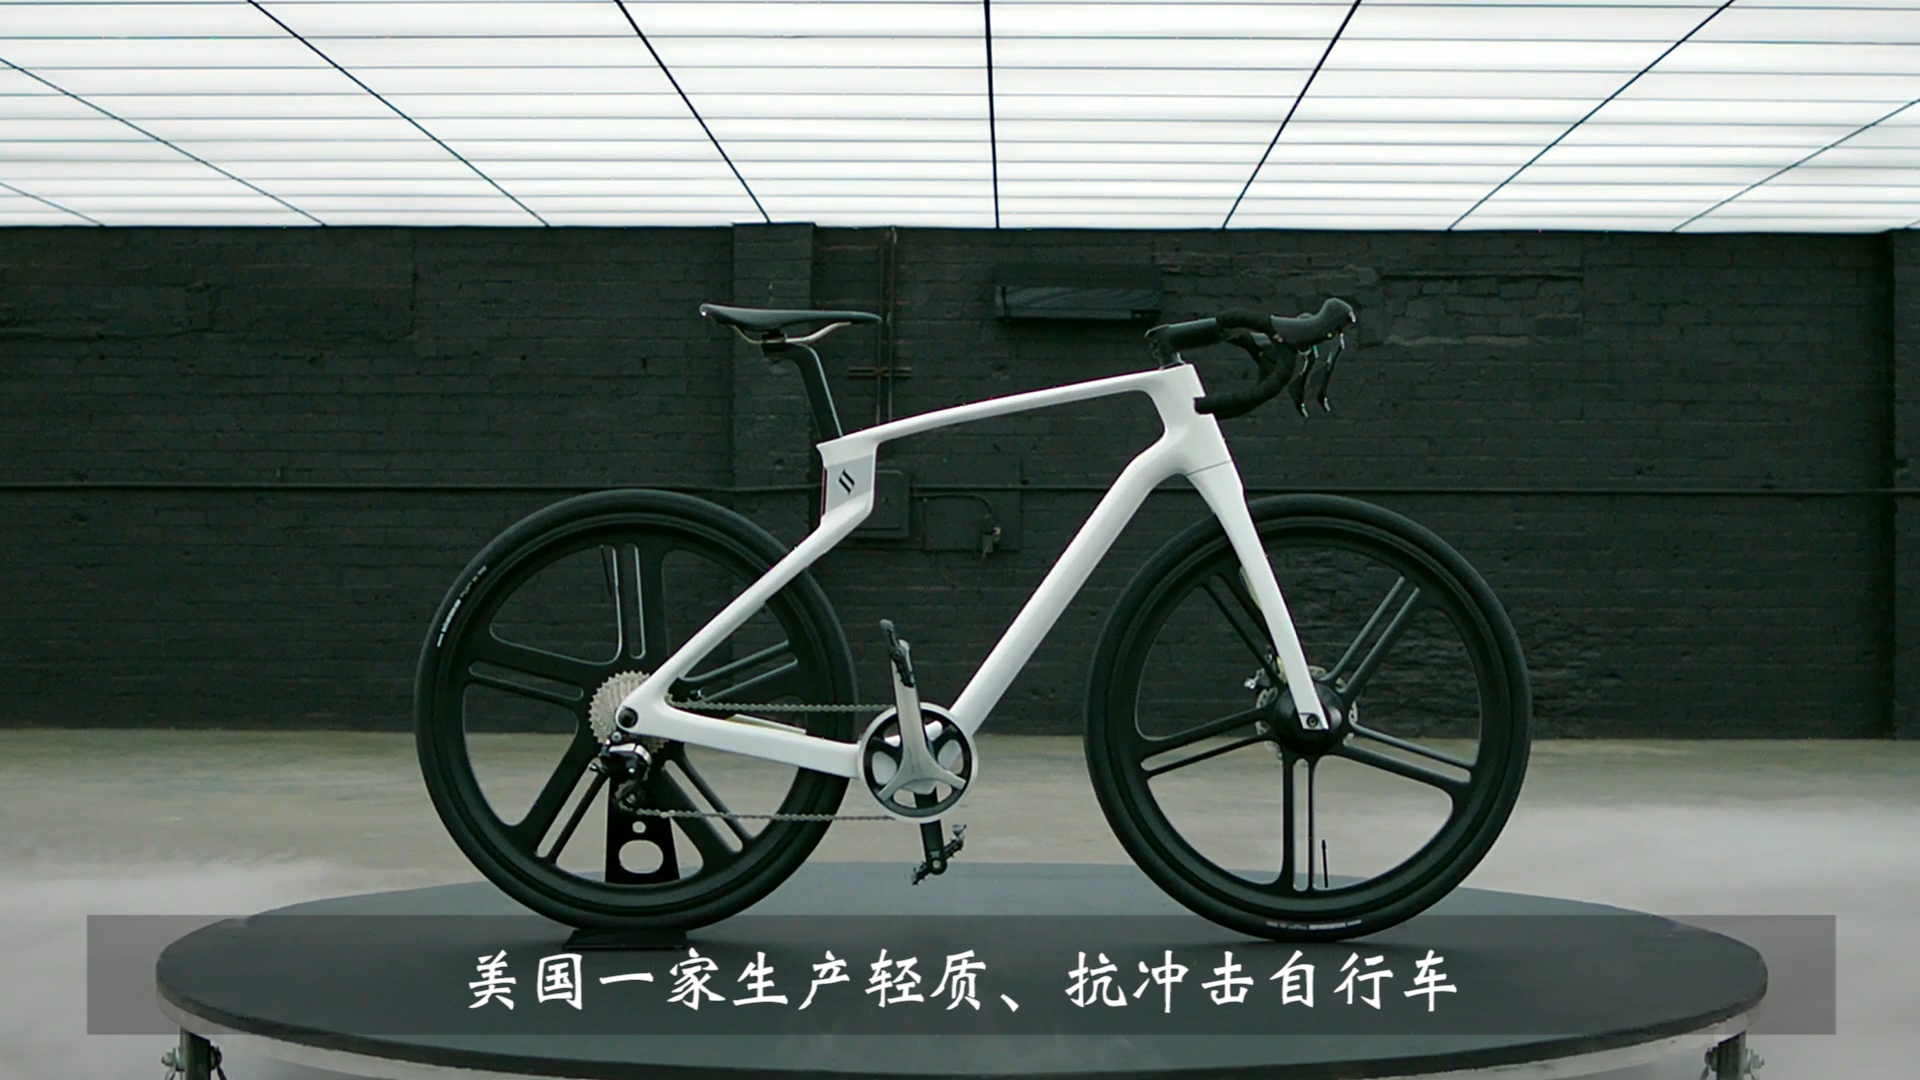 【弗戈工业趣闻】3D打印订制化一体式的碳纤维自行车